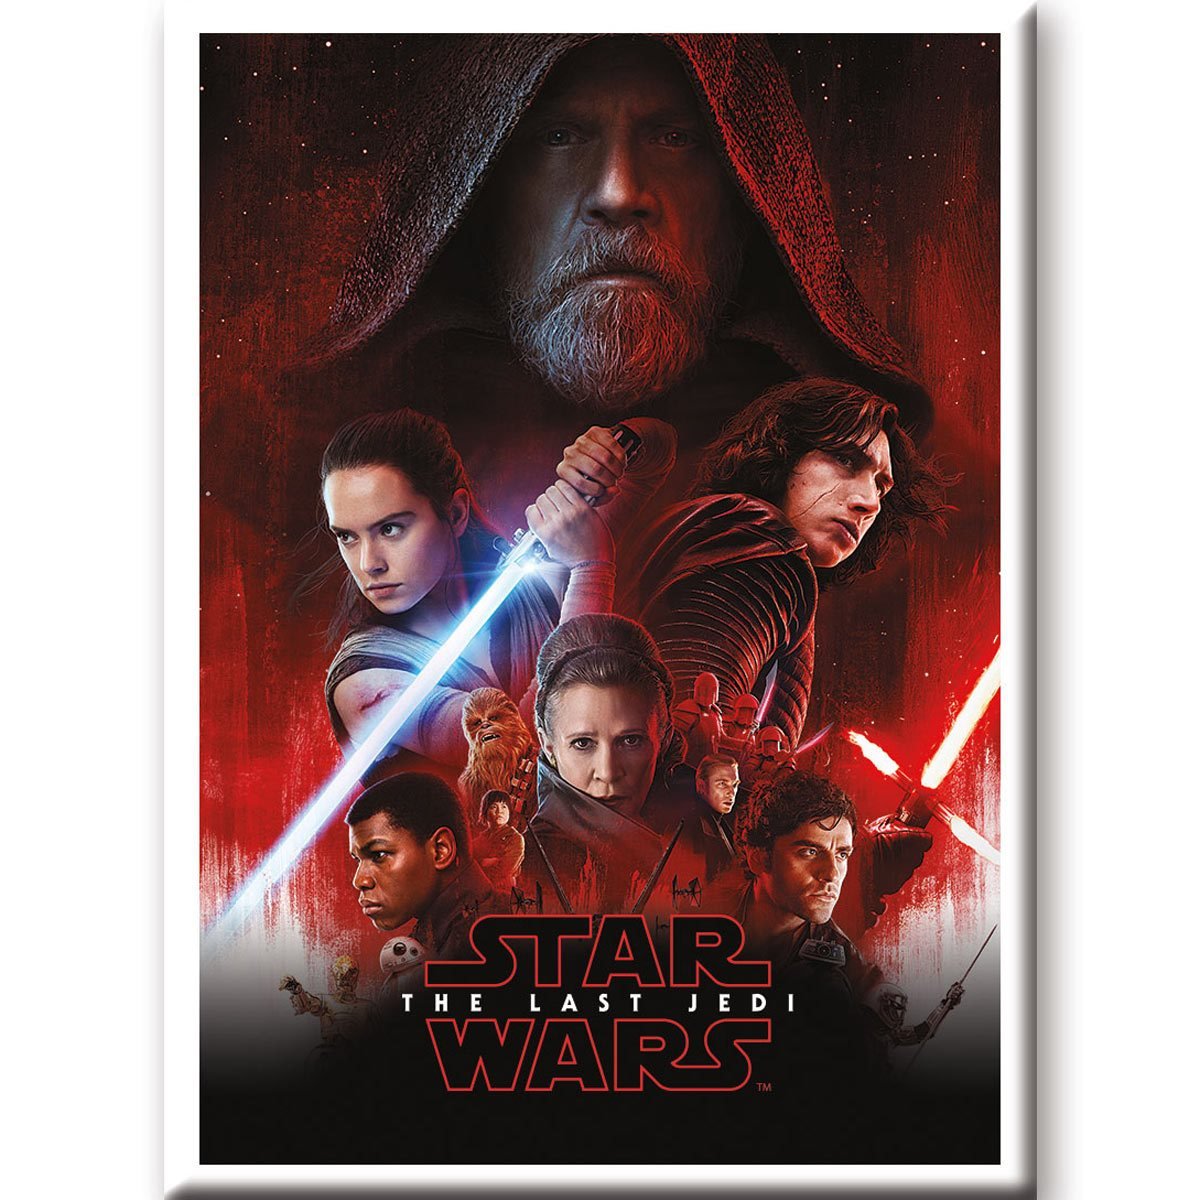 Star Wars: The Last Jedi' tickets on sale